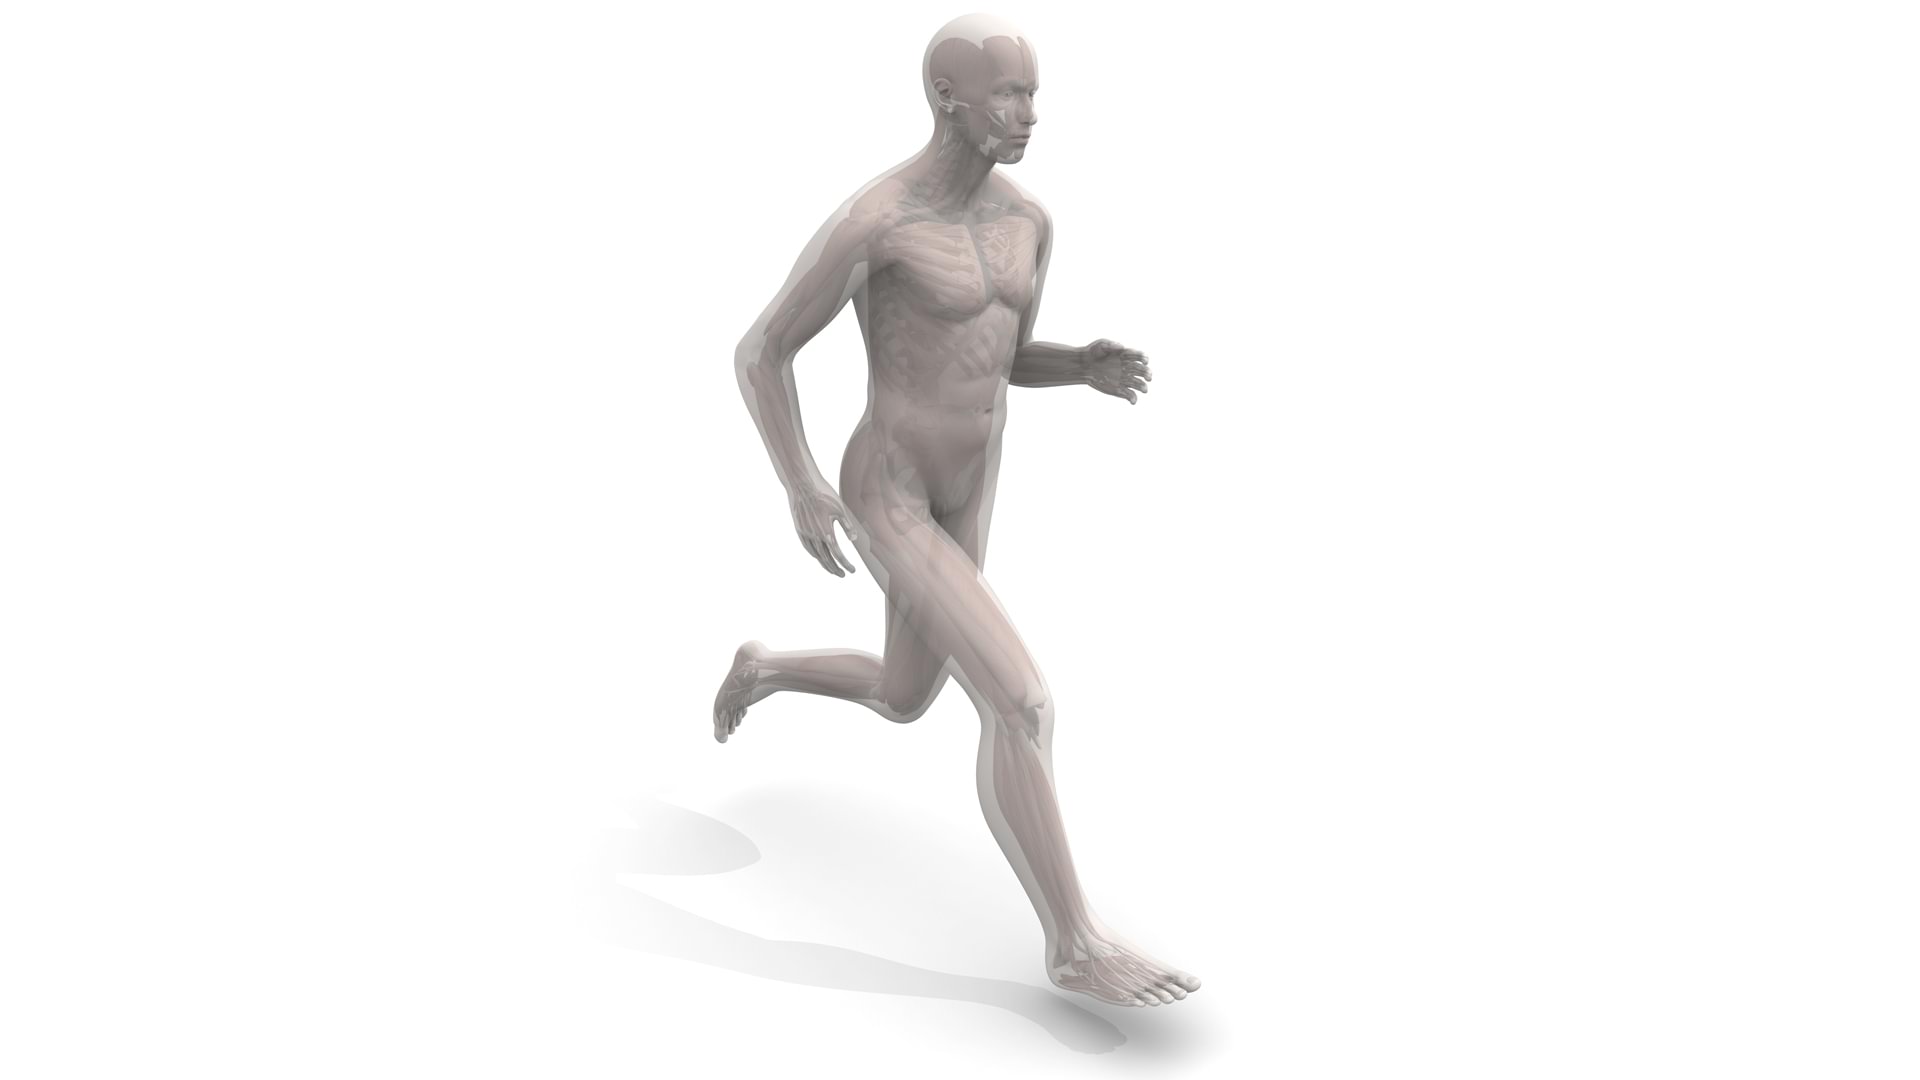 Schema einer laufenden Person